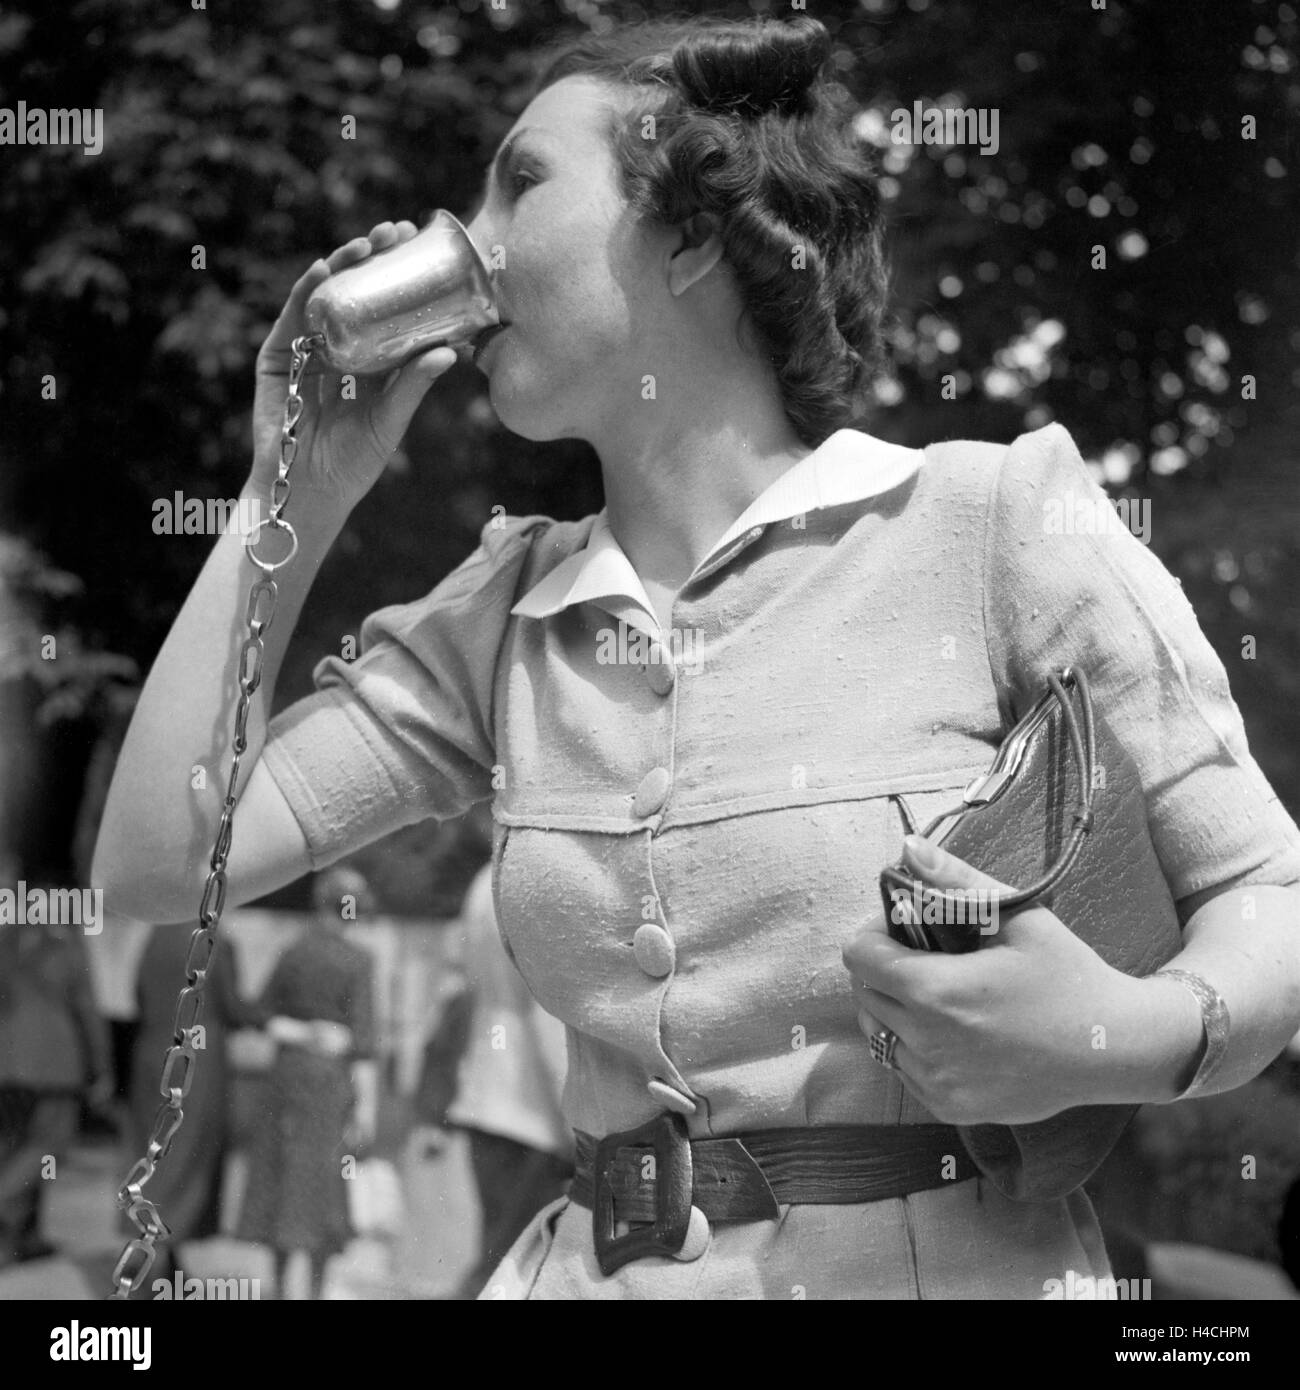 Eine Frau Aus einem trinkt Brunnen en Bei Stuttgart Bad Cannstatt, Deutschland 1930er Jahre. Una mujer bebiendo de un pozo en Bad Cannstatt, cerca de Stuttgart, Alemania 1930. Foto de stock